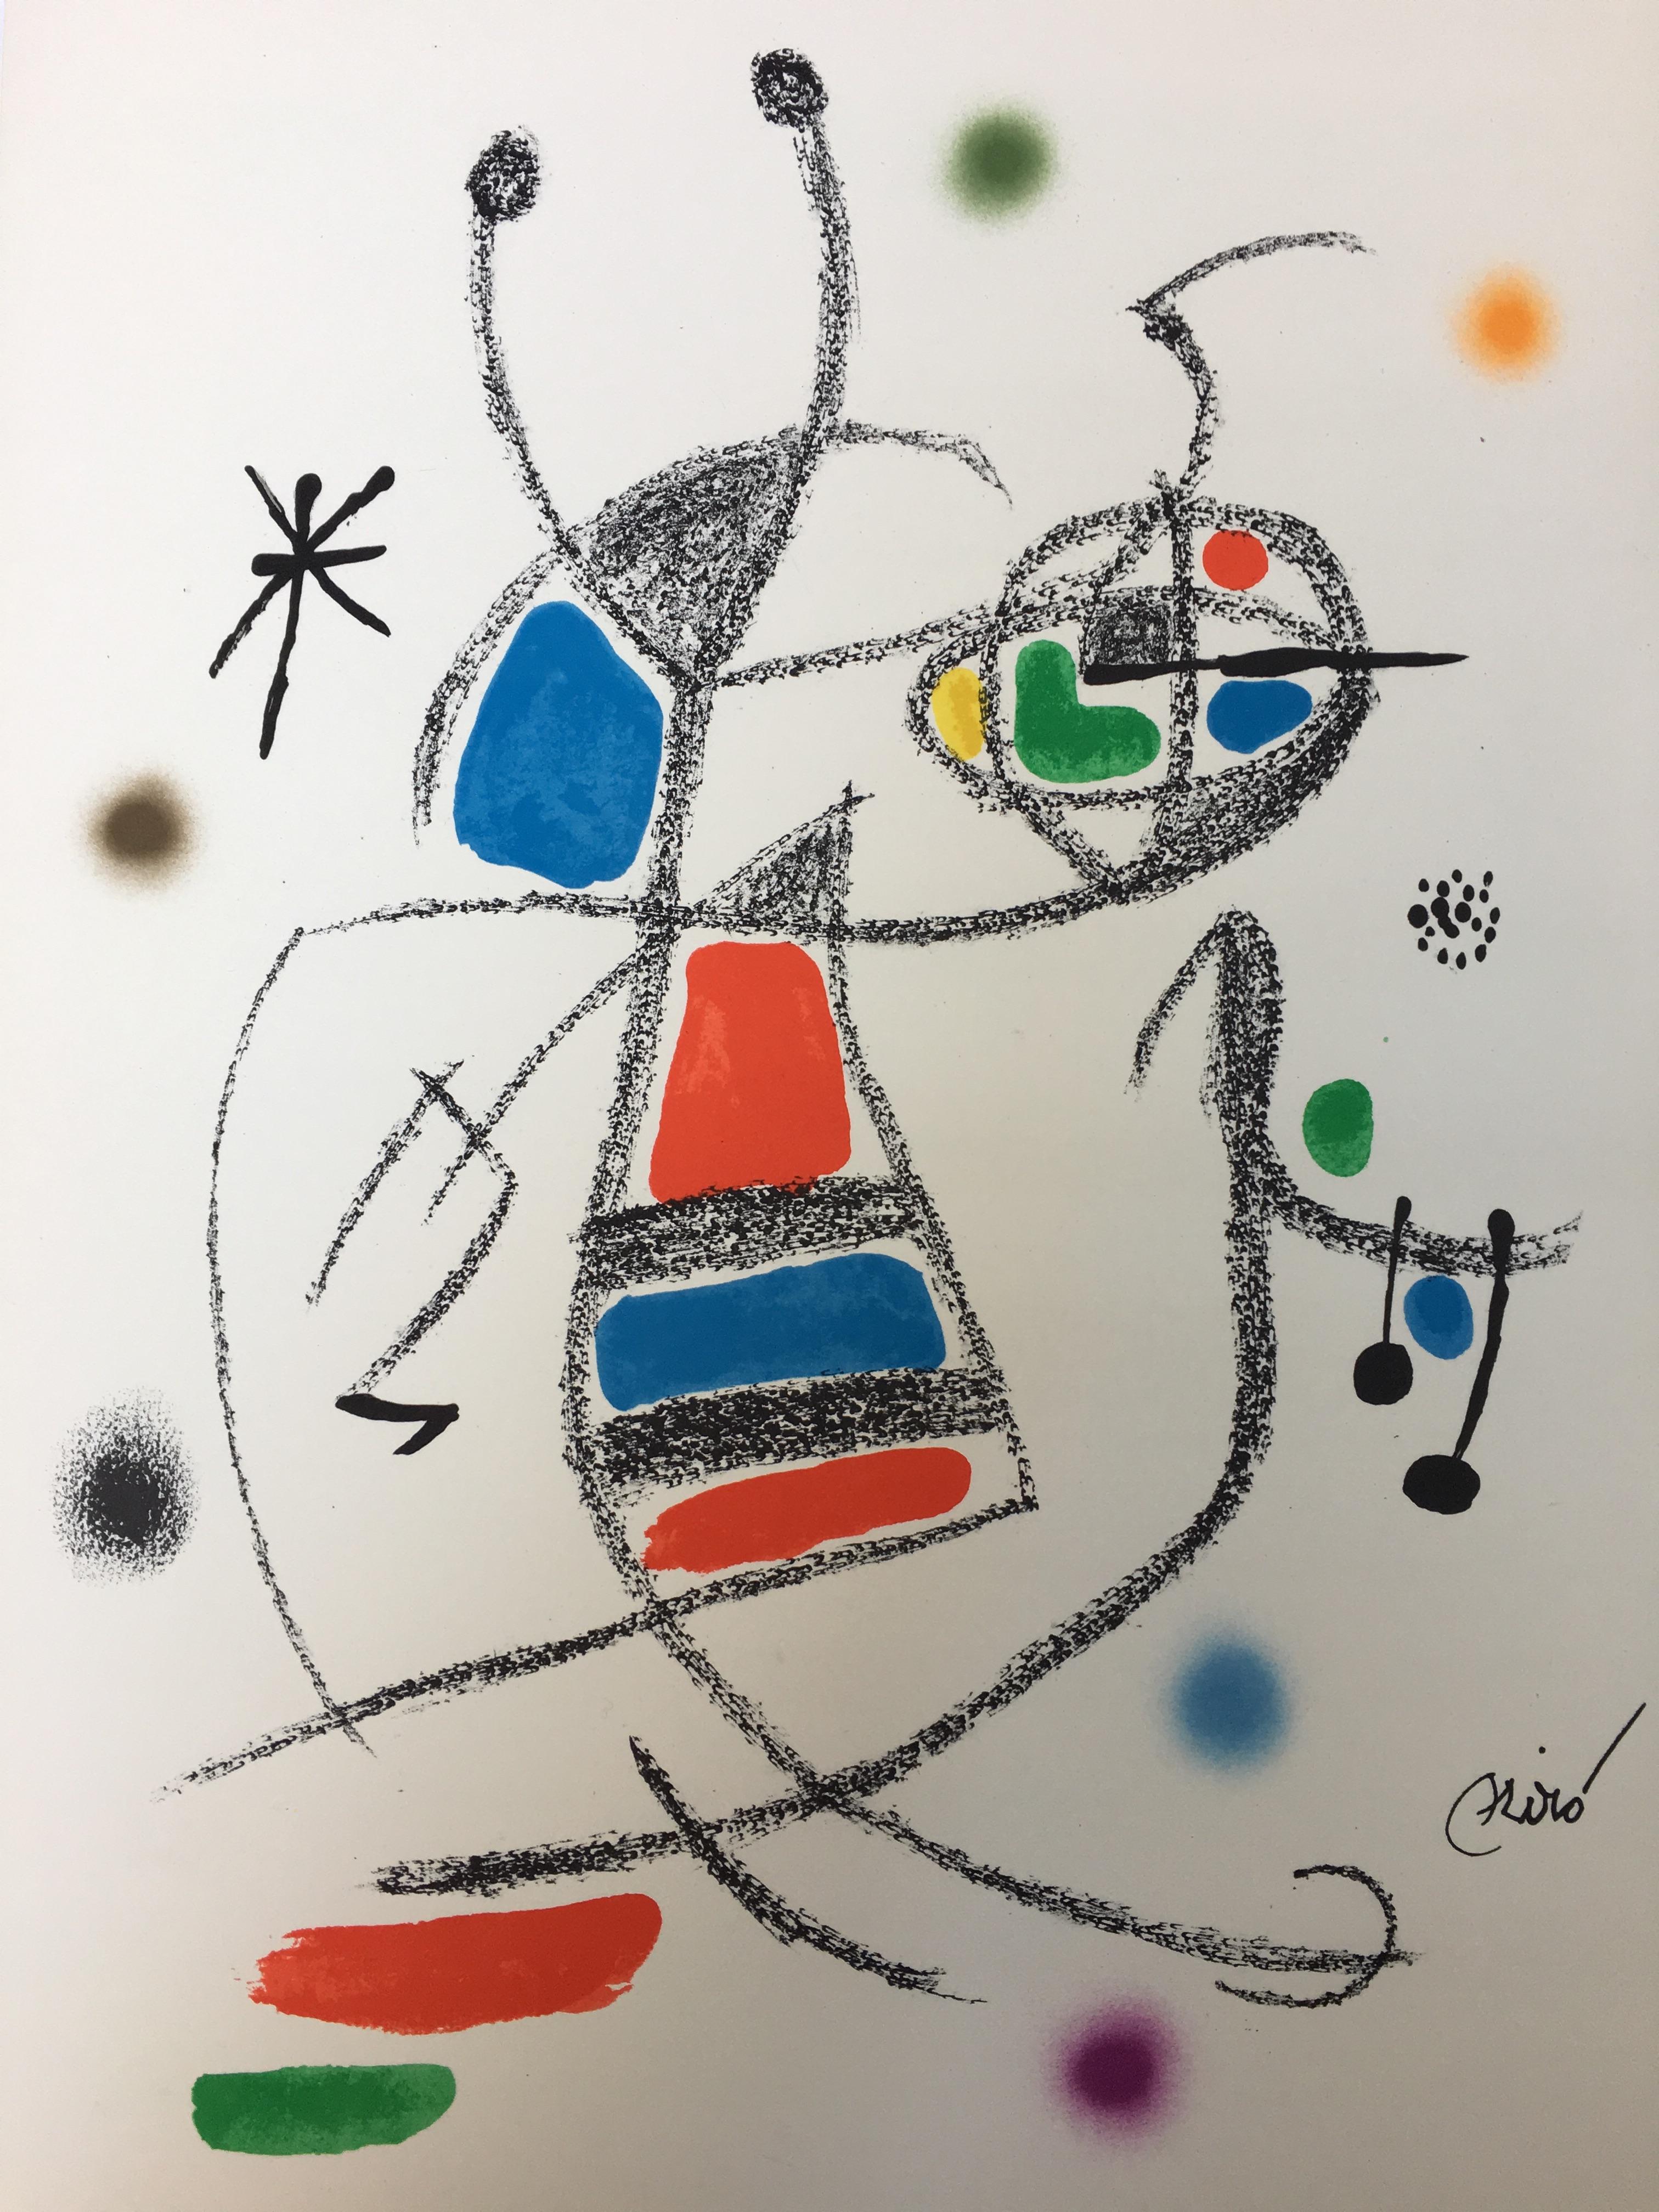 Joan Miró Abstract Print - Maravillas con Variaciones Acrosticas 7